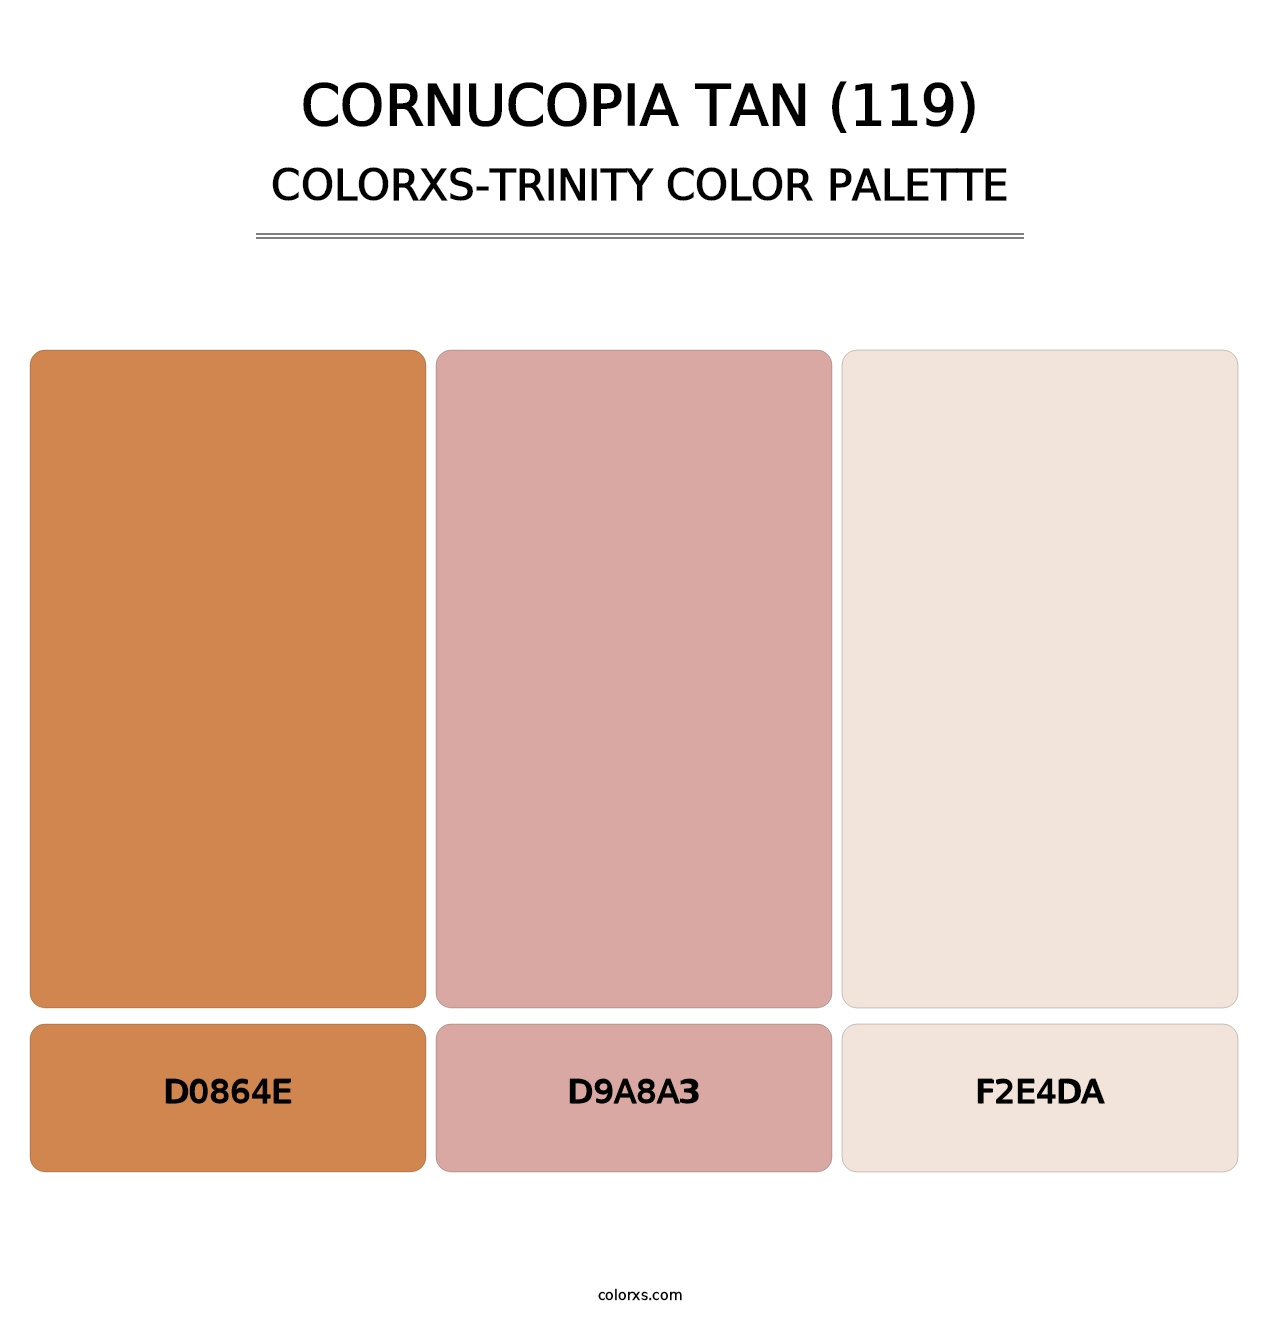 Cornucopia Tan (119) - Colorxs Trinity Palette